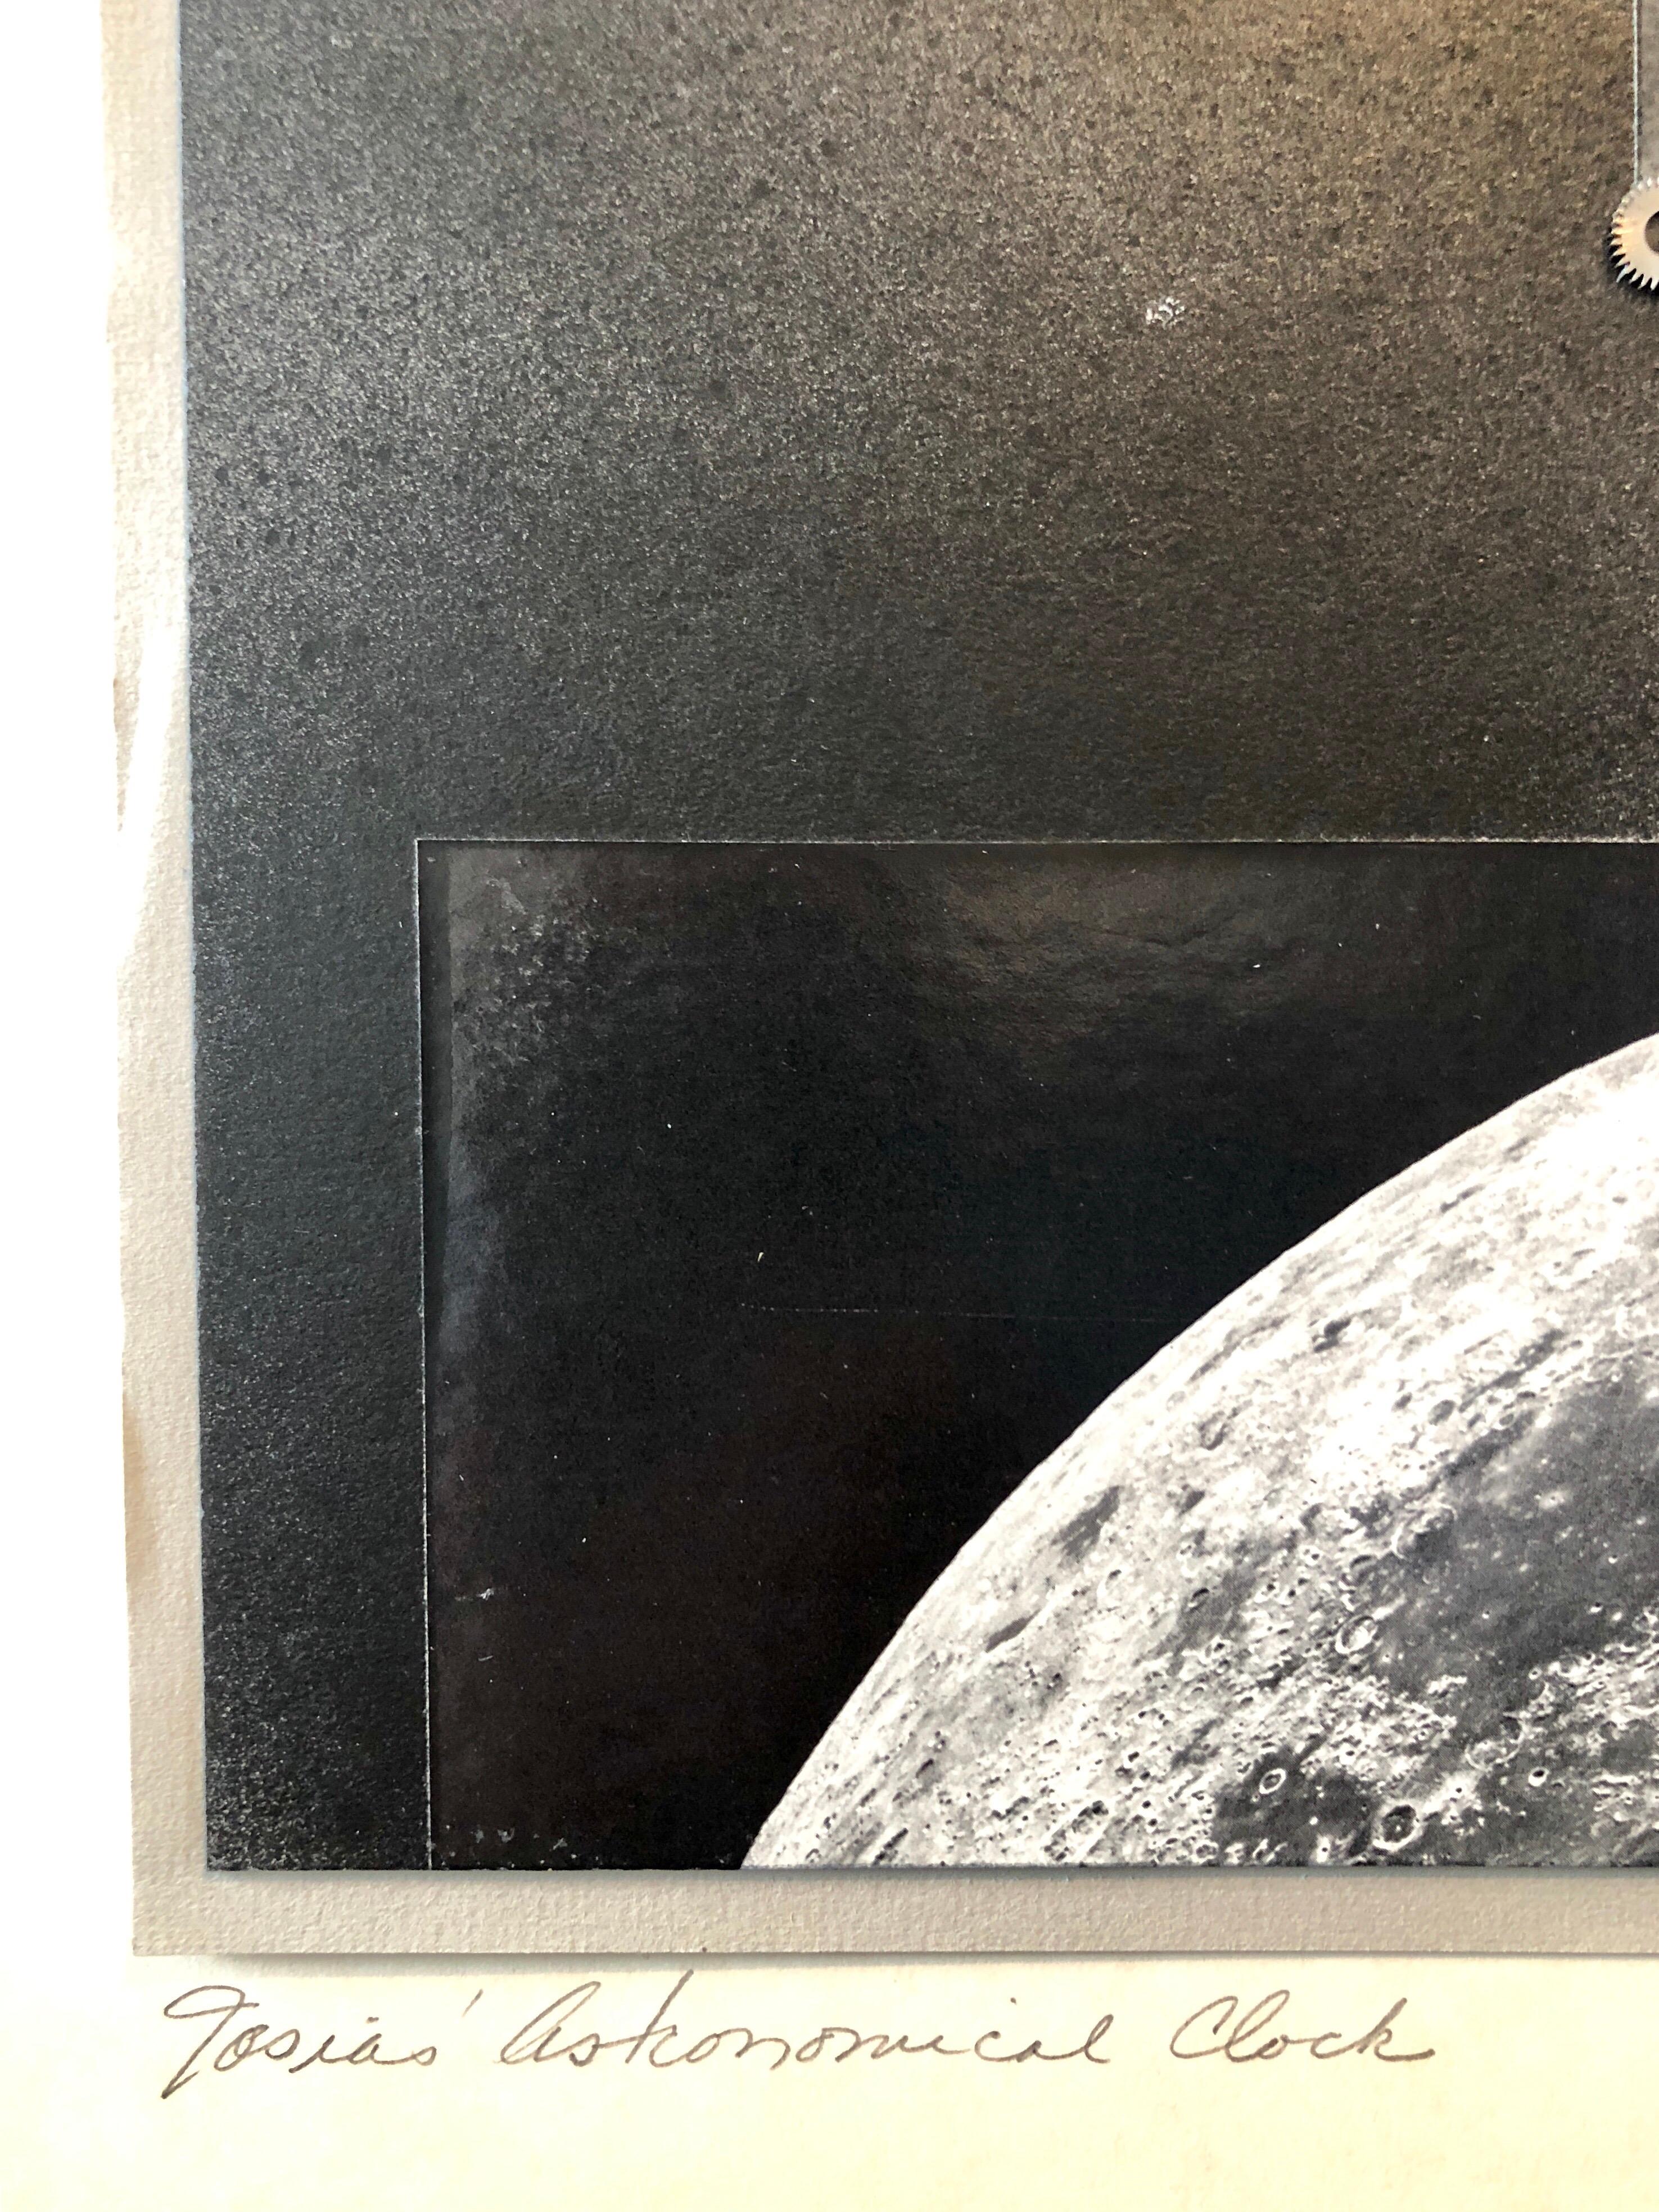 Josias Astronomische Uhrenuhrteiler, Assemblage-Foto, Planeten-Collage-Foto (Dada), Photograph, von Vera Simons